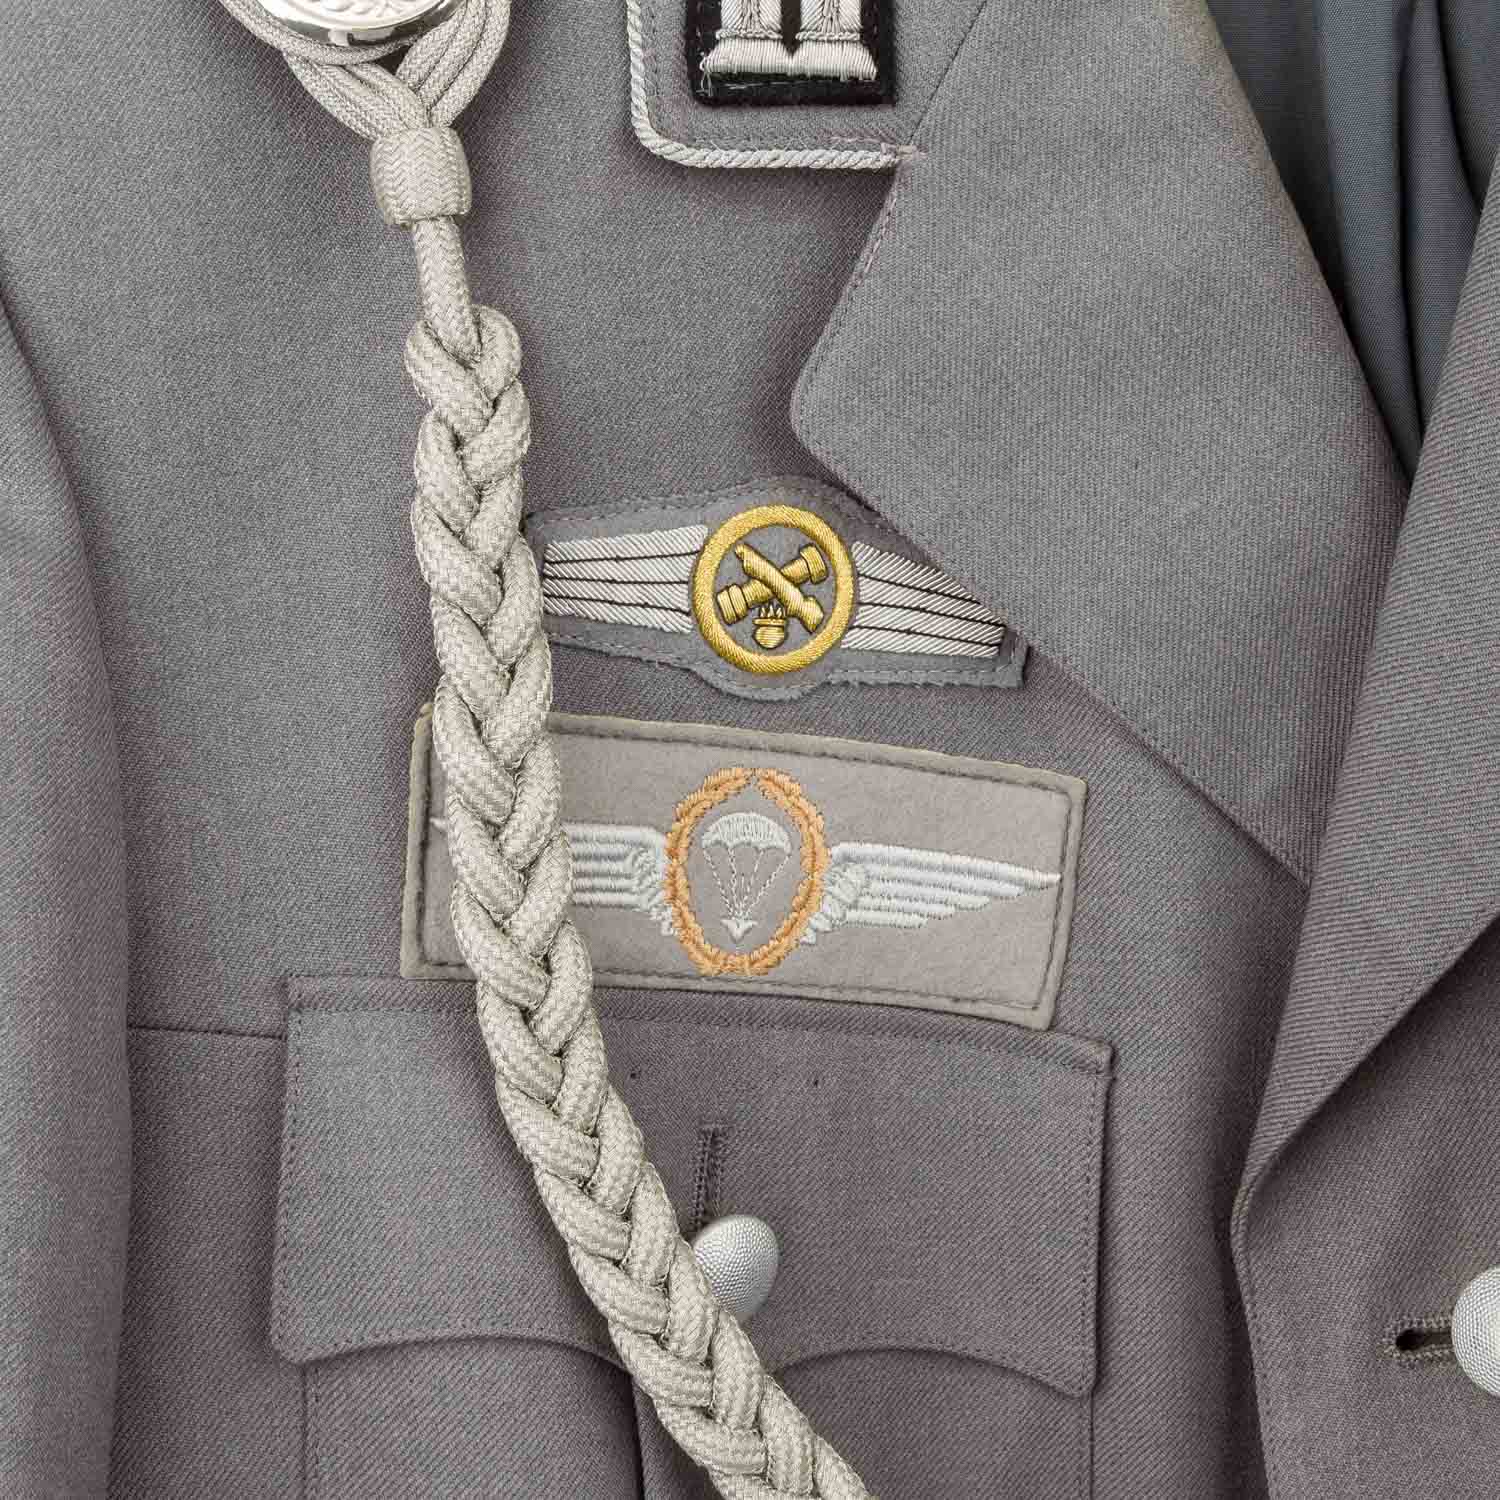 Uniformen - Graue Dienstjacke der Bundeswehr - Image 2 of 8